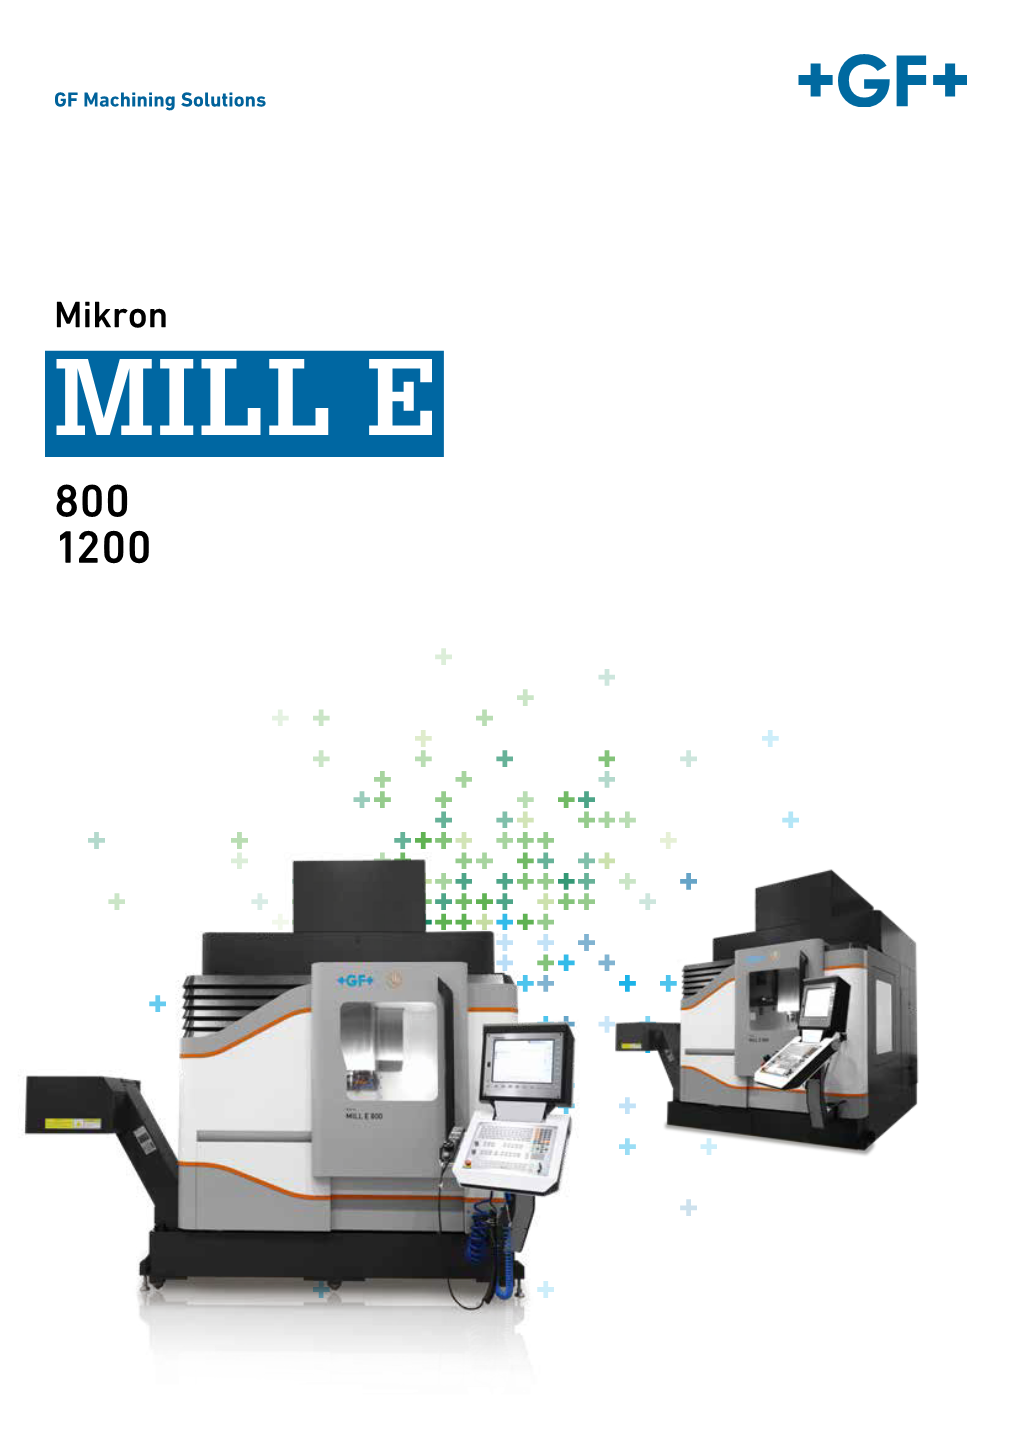 Mikron MILL E 800 1200 Passion for Precision